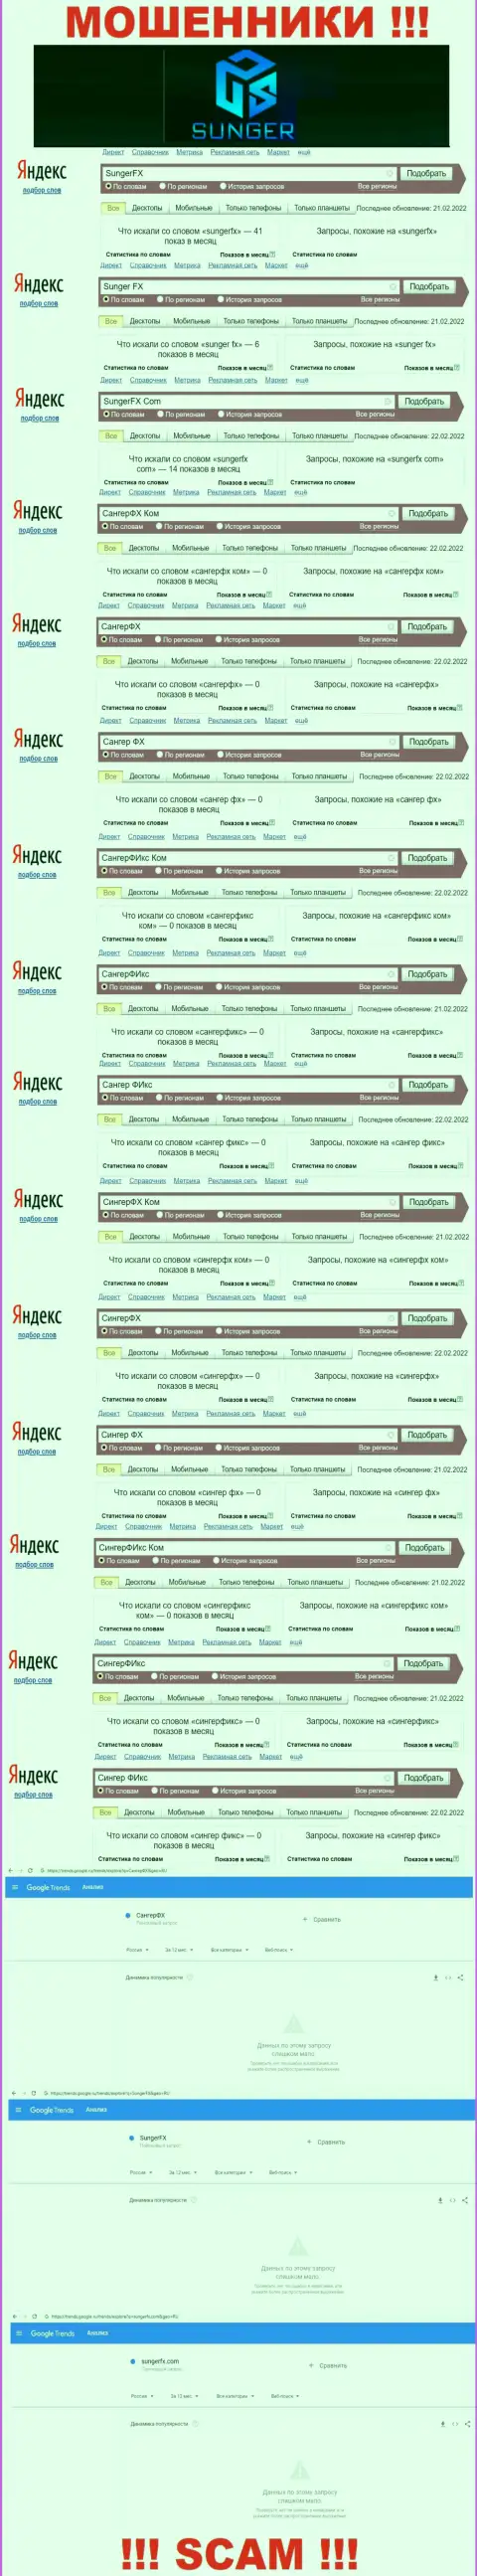 Sunger FX - МОШЕННИКИ, сколько именно раз искали в поисковиках internet сети данную компанию